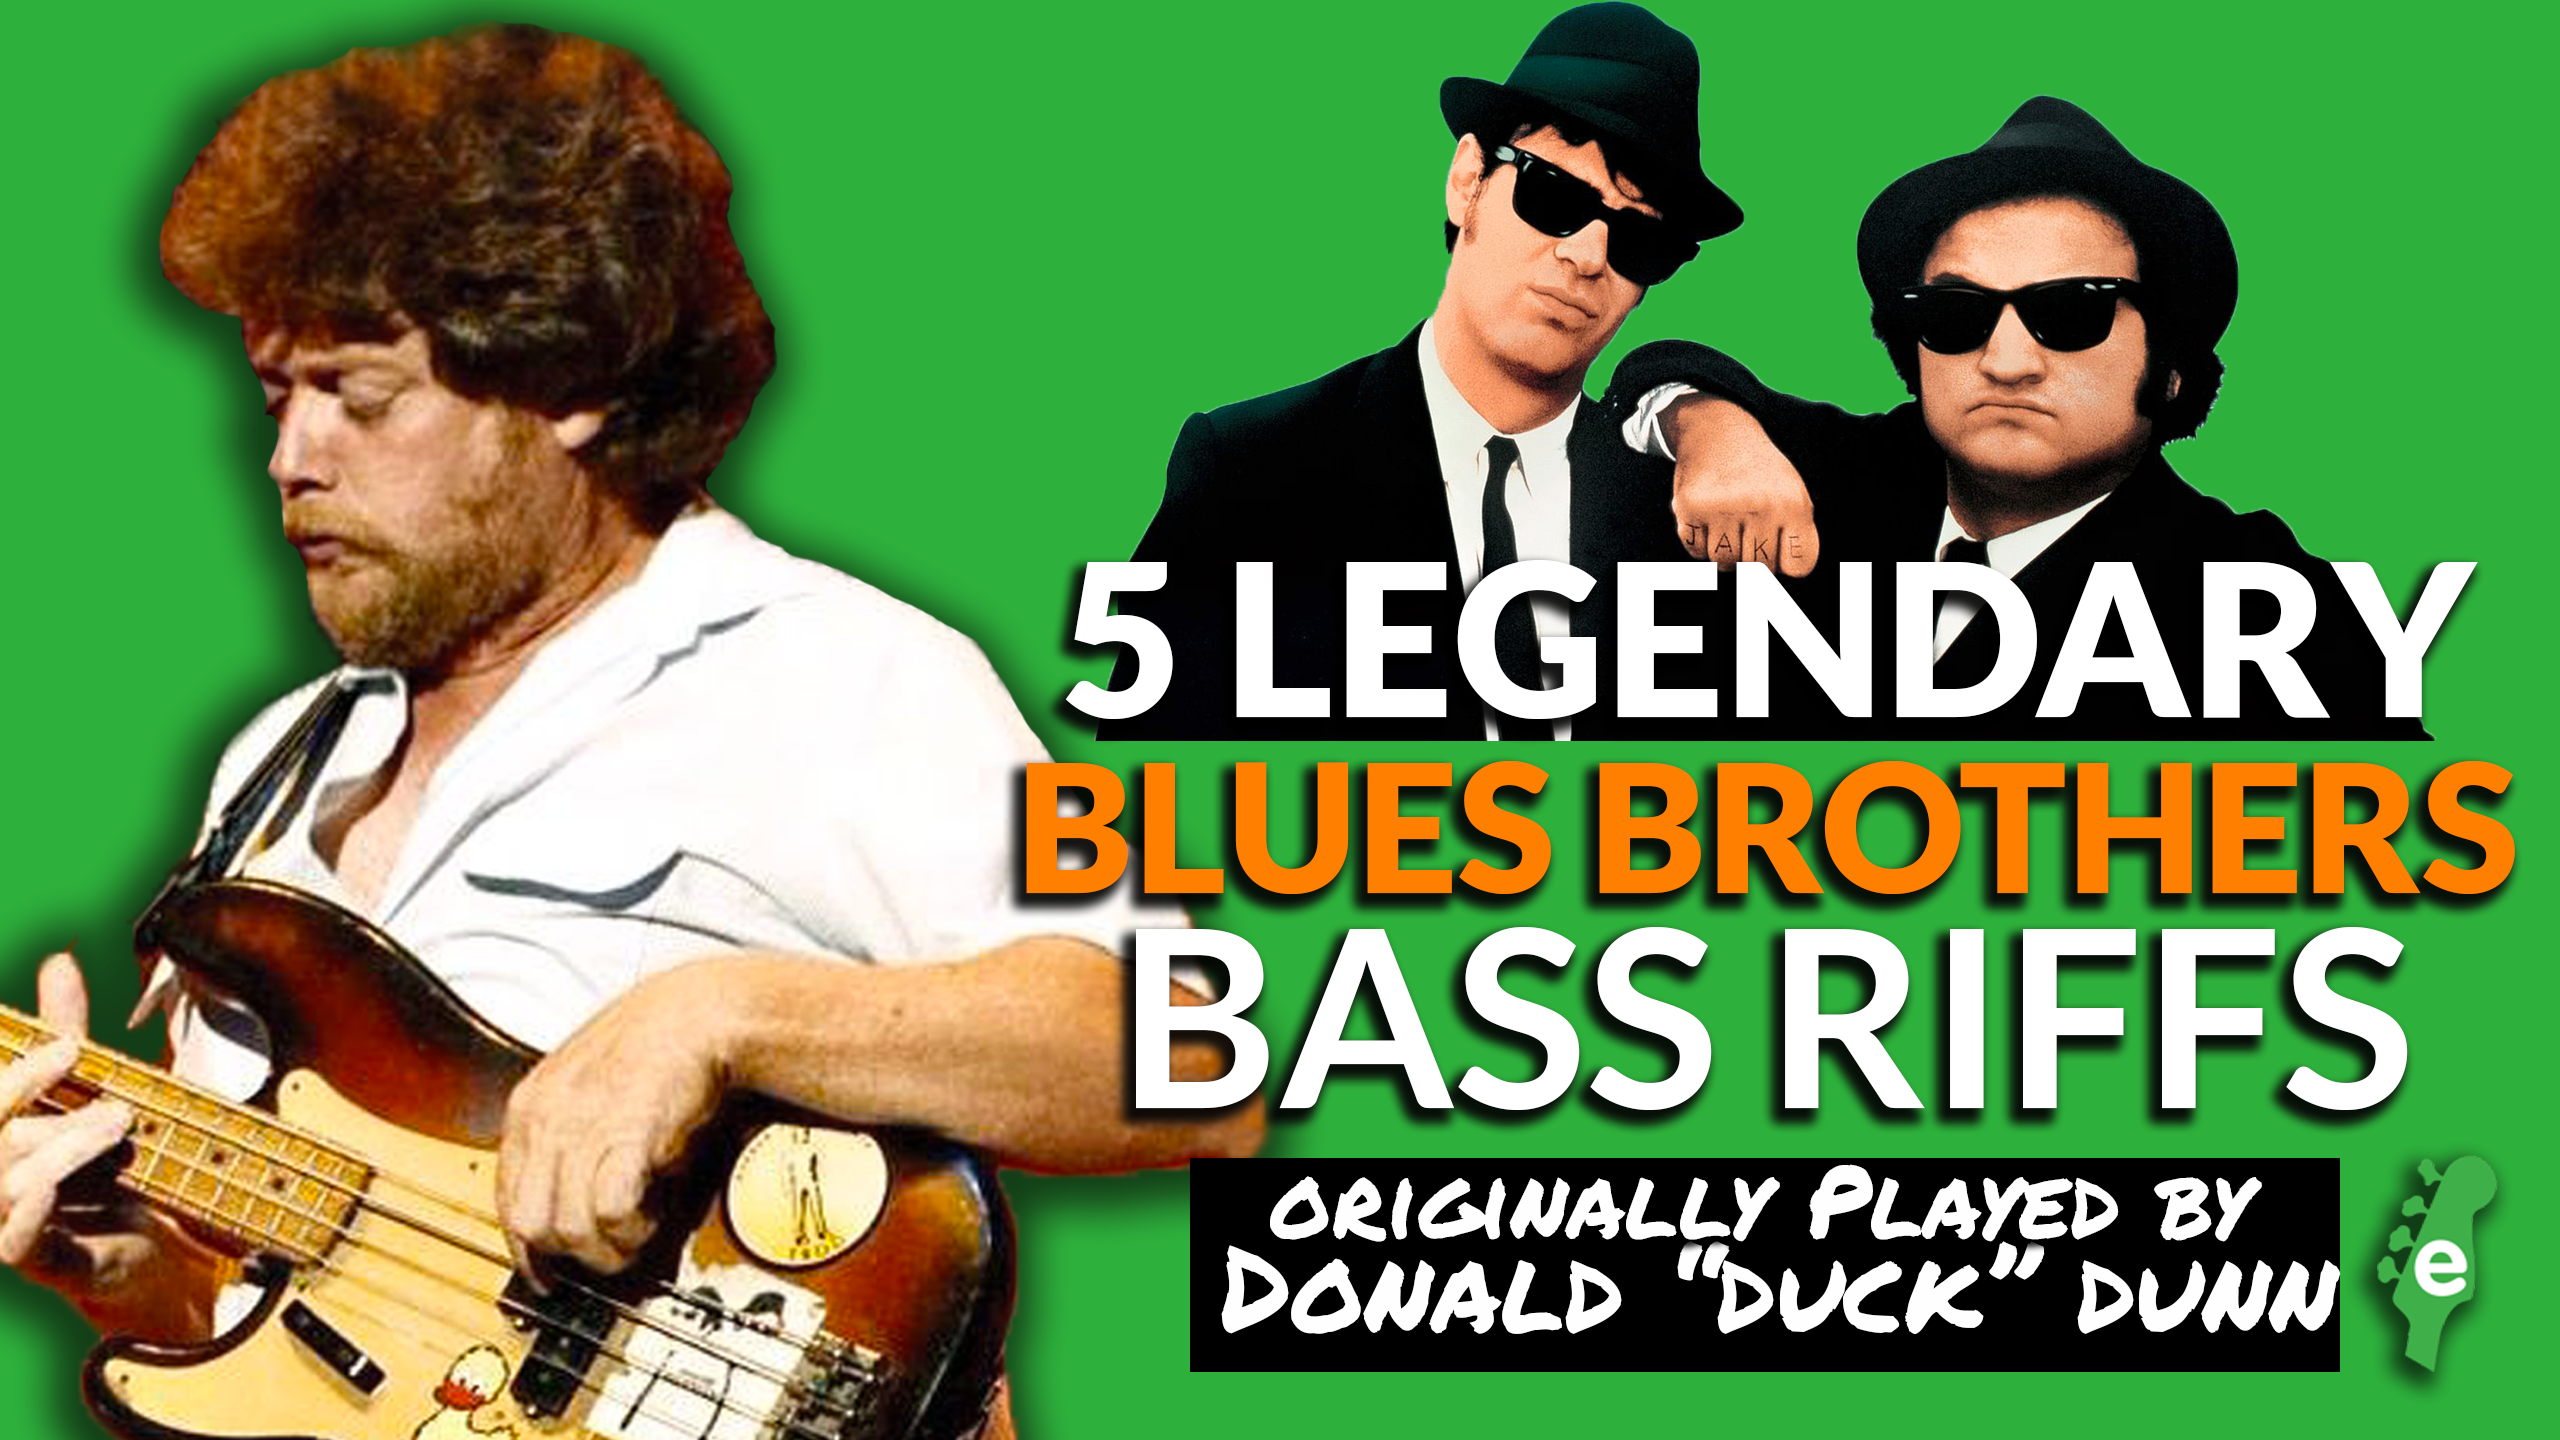 Bass brothers. Бас рифф. Donald “Duck” Dunn братья блюз. Donald "Duck" Dunn Bass 1969.